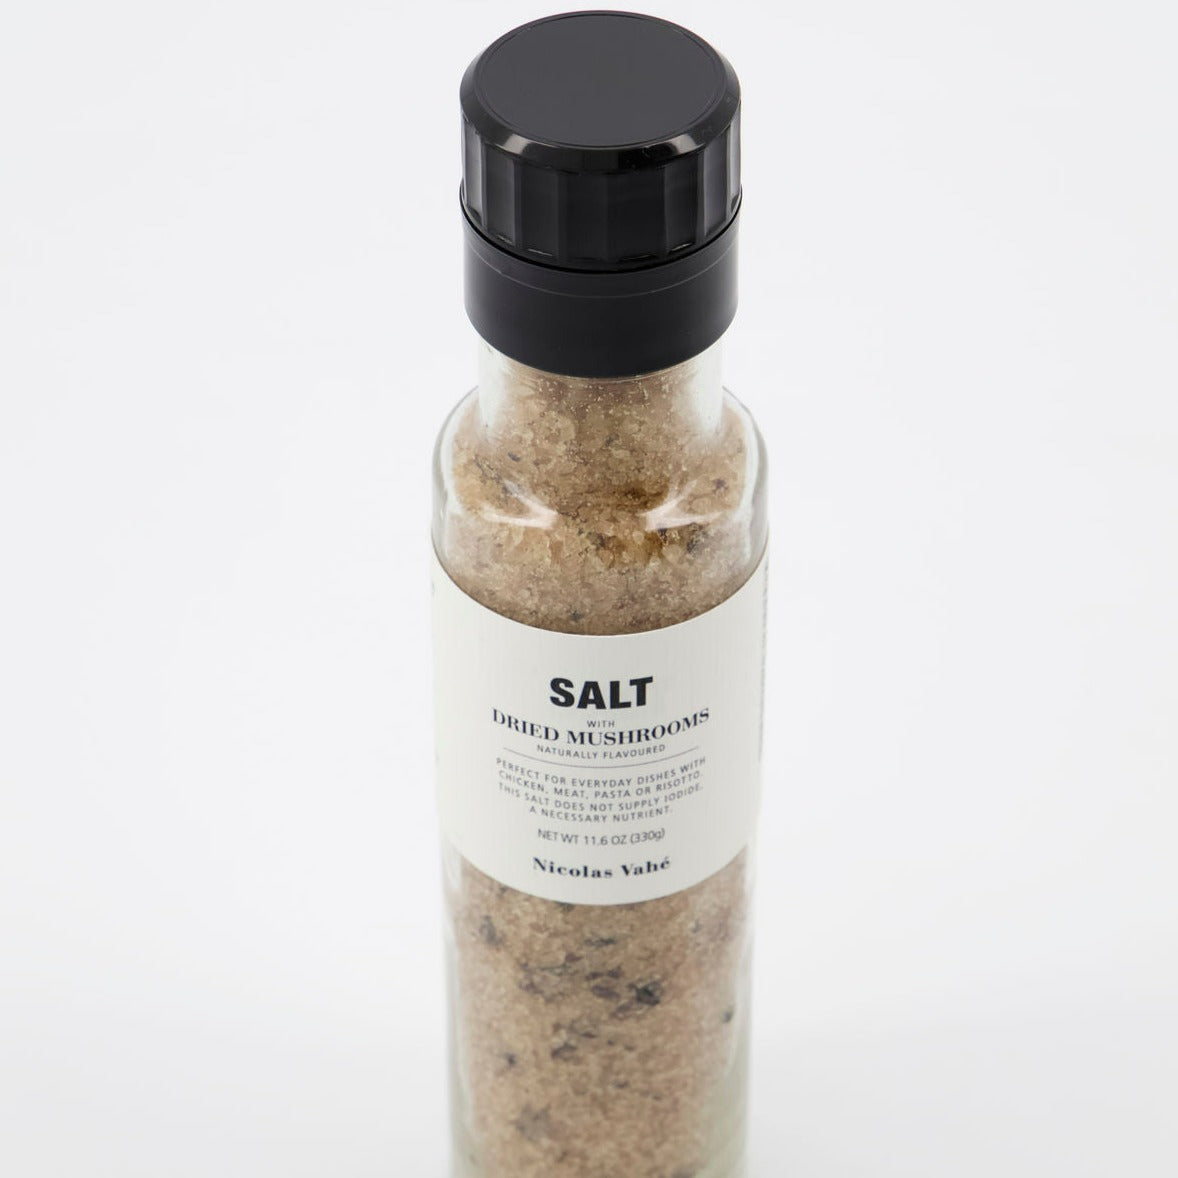 Nicolas Vahé Salt, Mushrooms